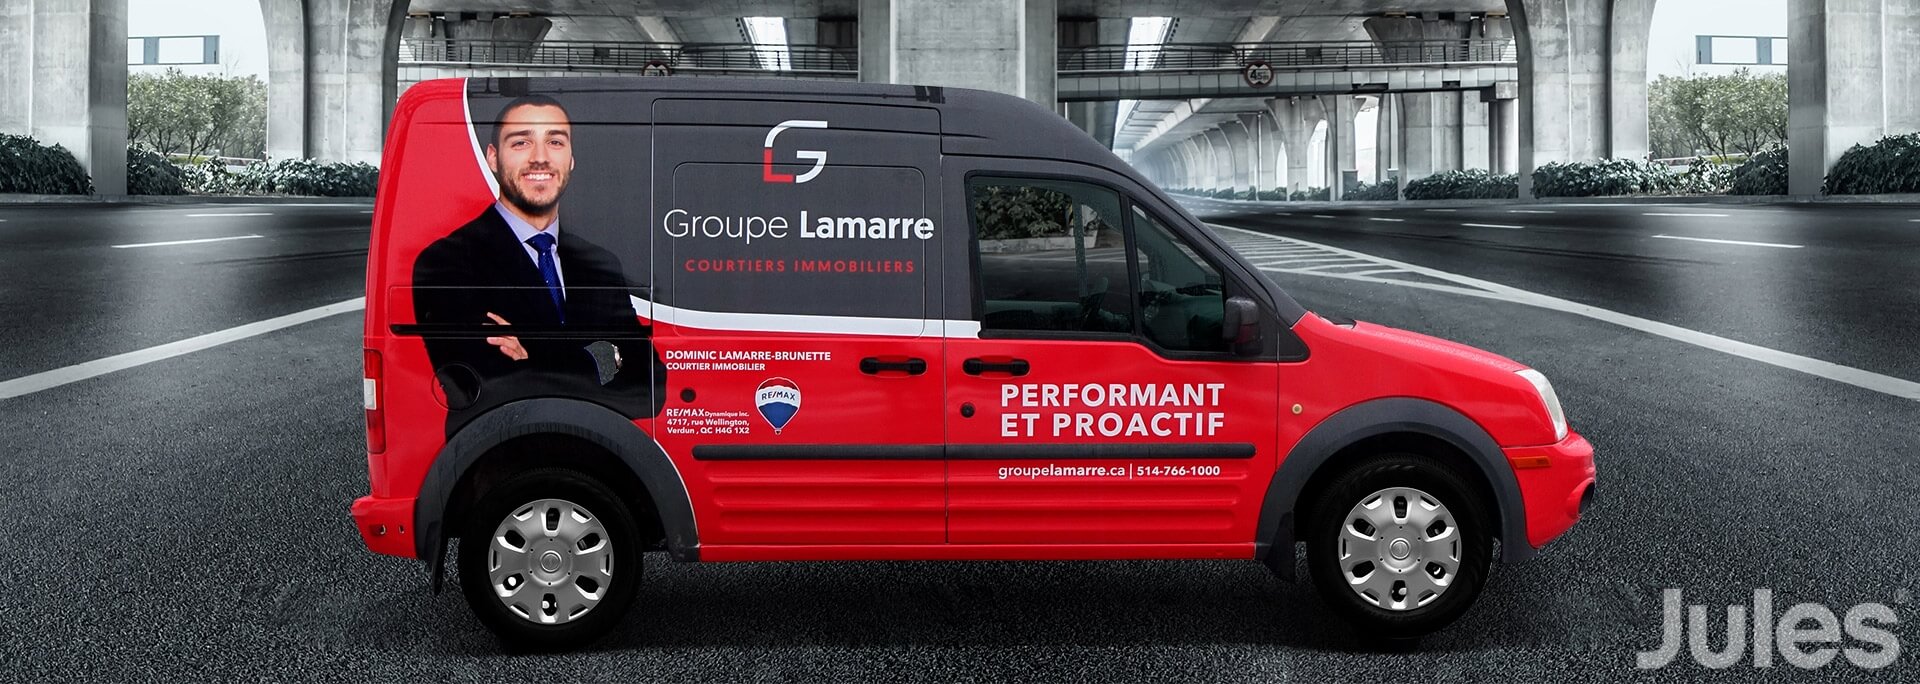 ford transit connect wrap lettrage de camion Groupe Lamarre Remax courtiers immobiliers par jules communications